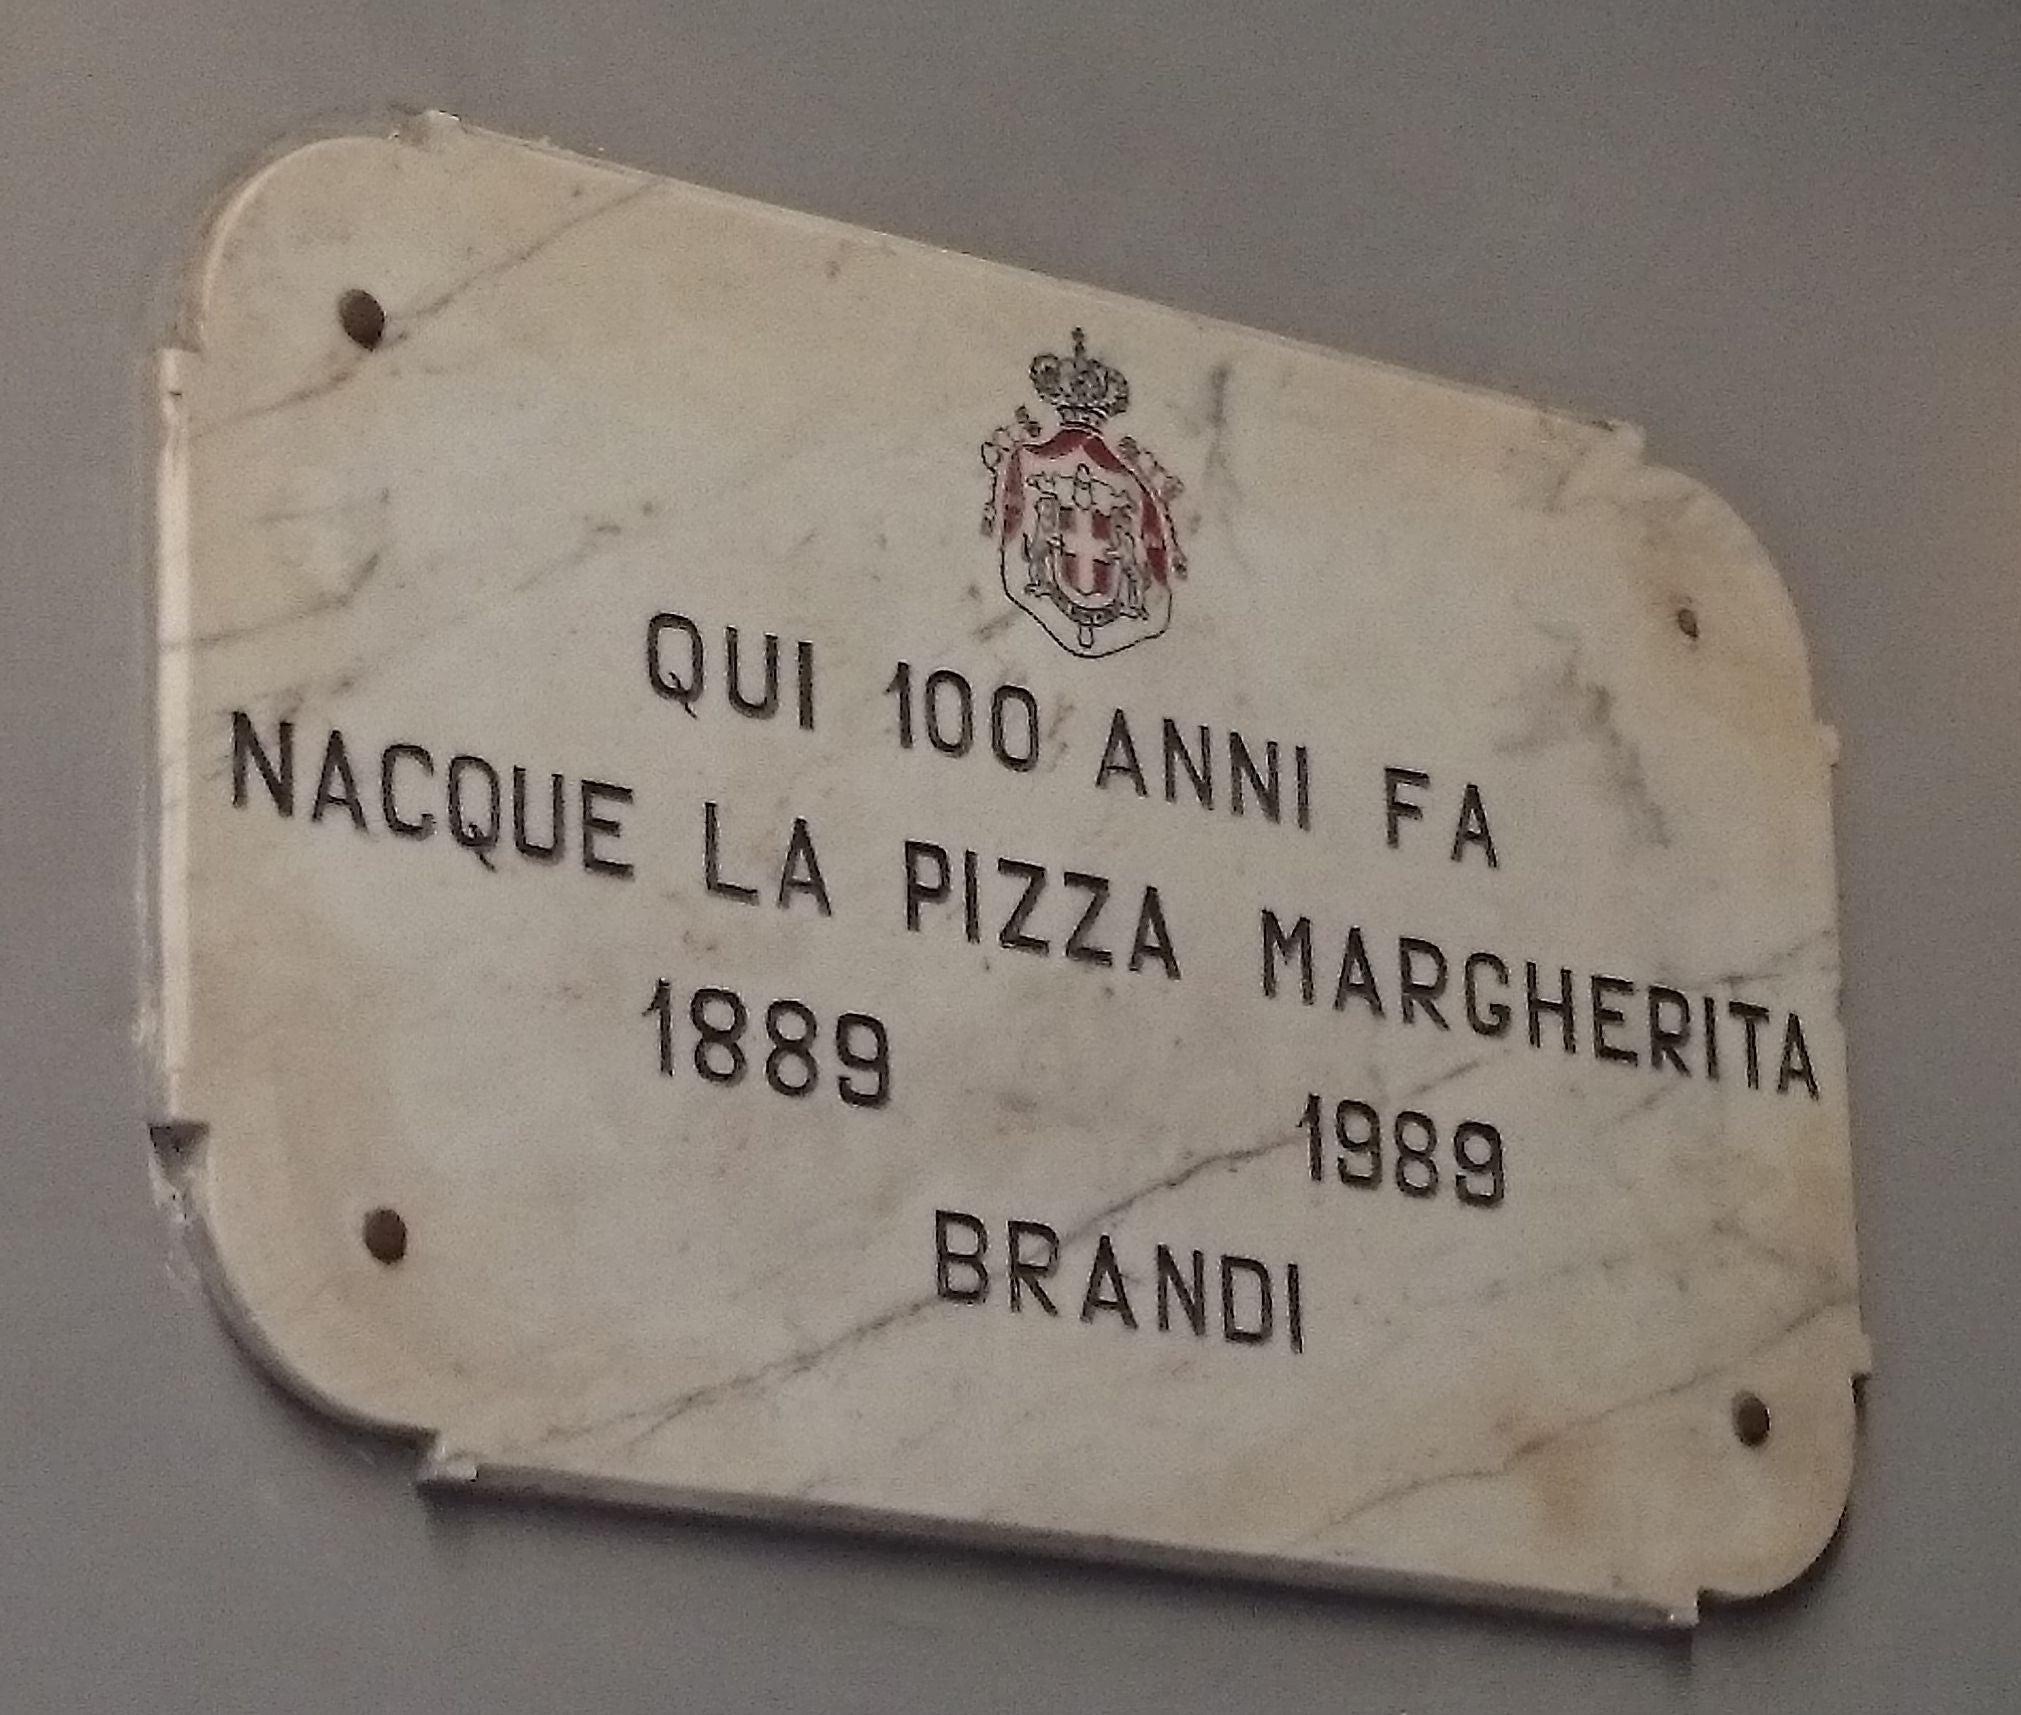 Pizzeria Brandi Naples Italy